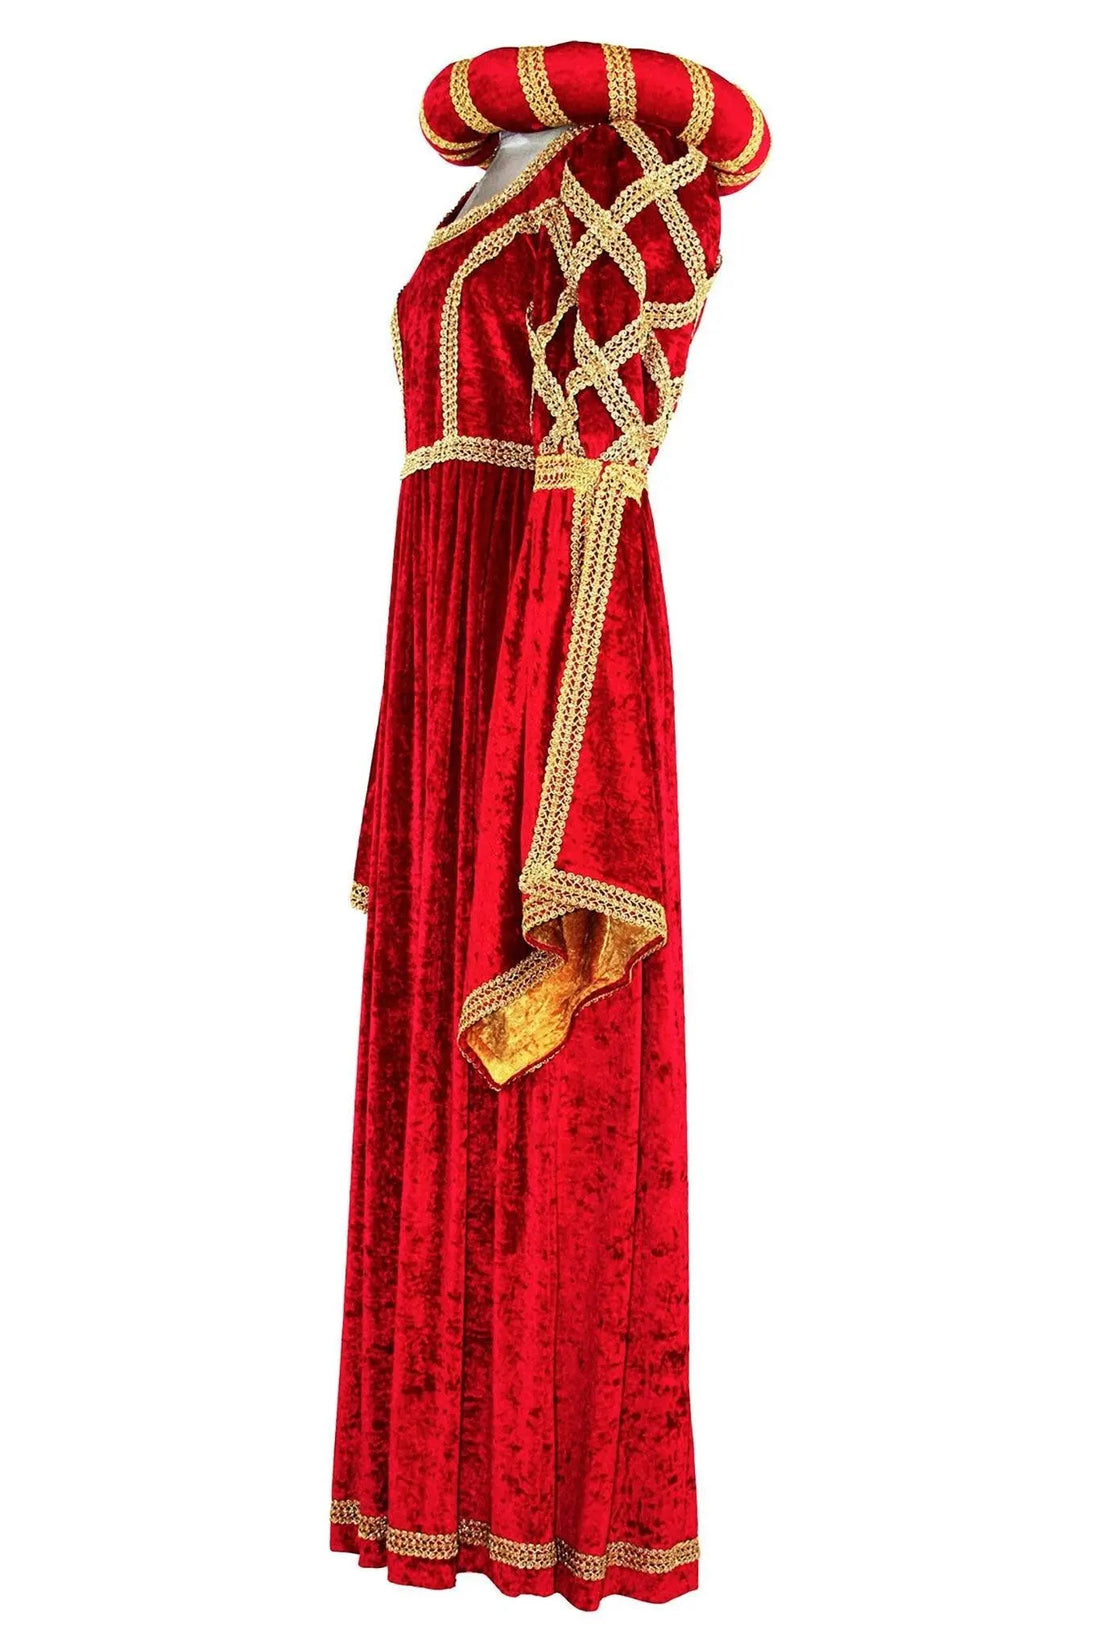 Noleggio abito donna del Medioevo per balletti Romeo e Giulietta-stori